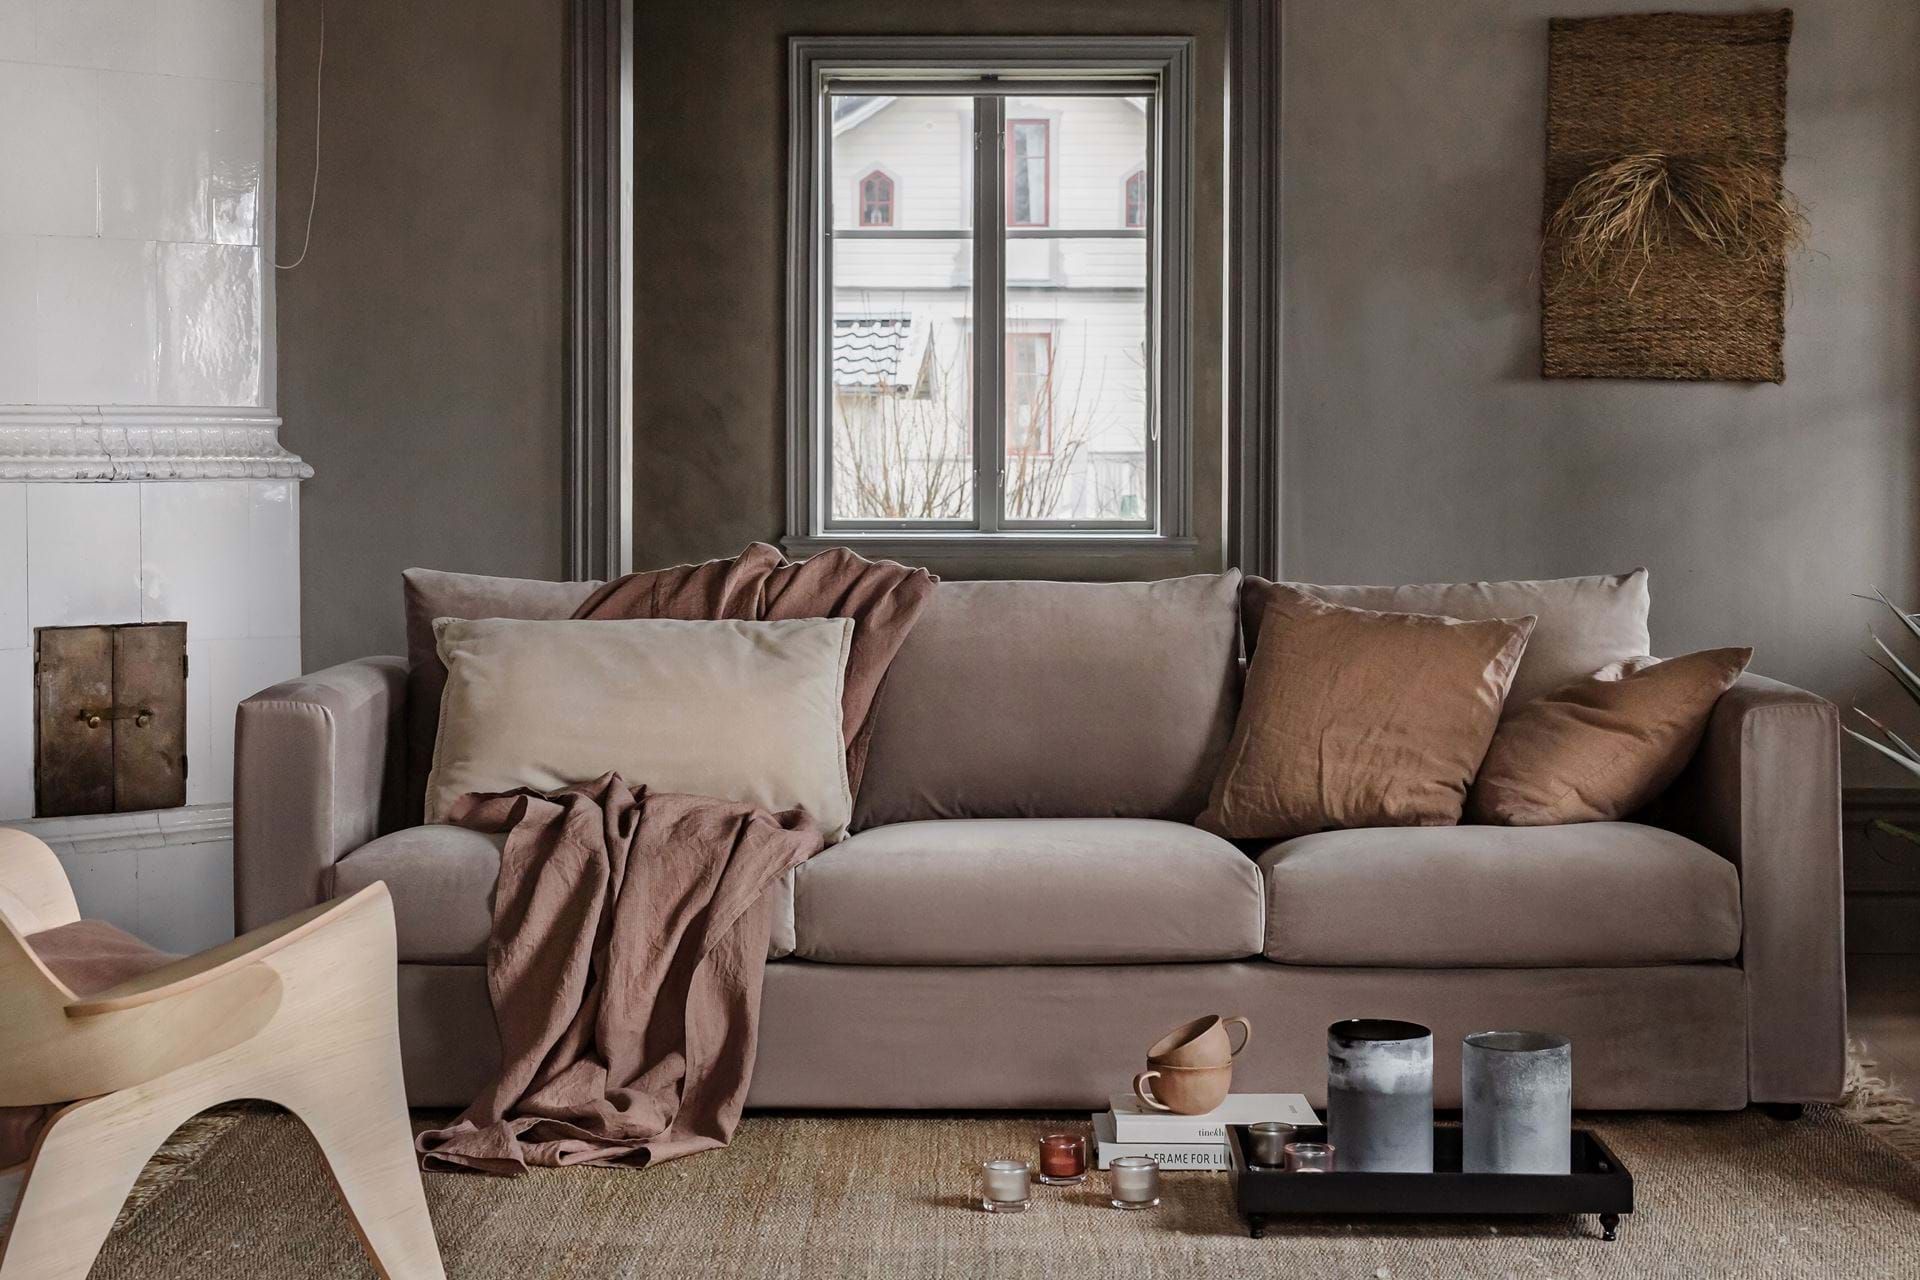 IKEA Vimle sofa review by Bemz | Bemz